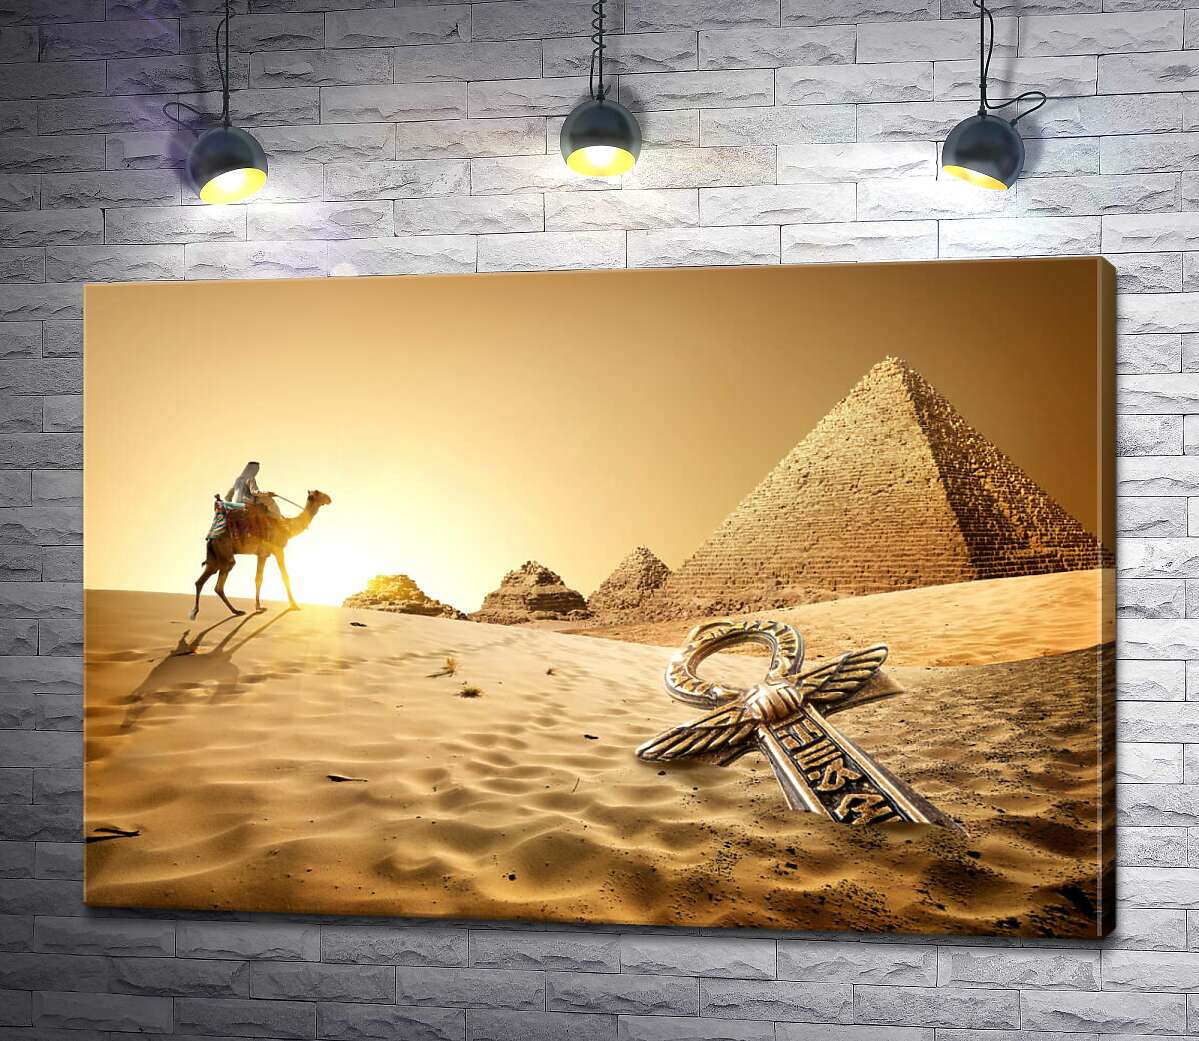 картина Символ життя - анх в пісках пустелі на фоні єгипетських пірамід